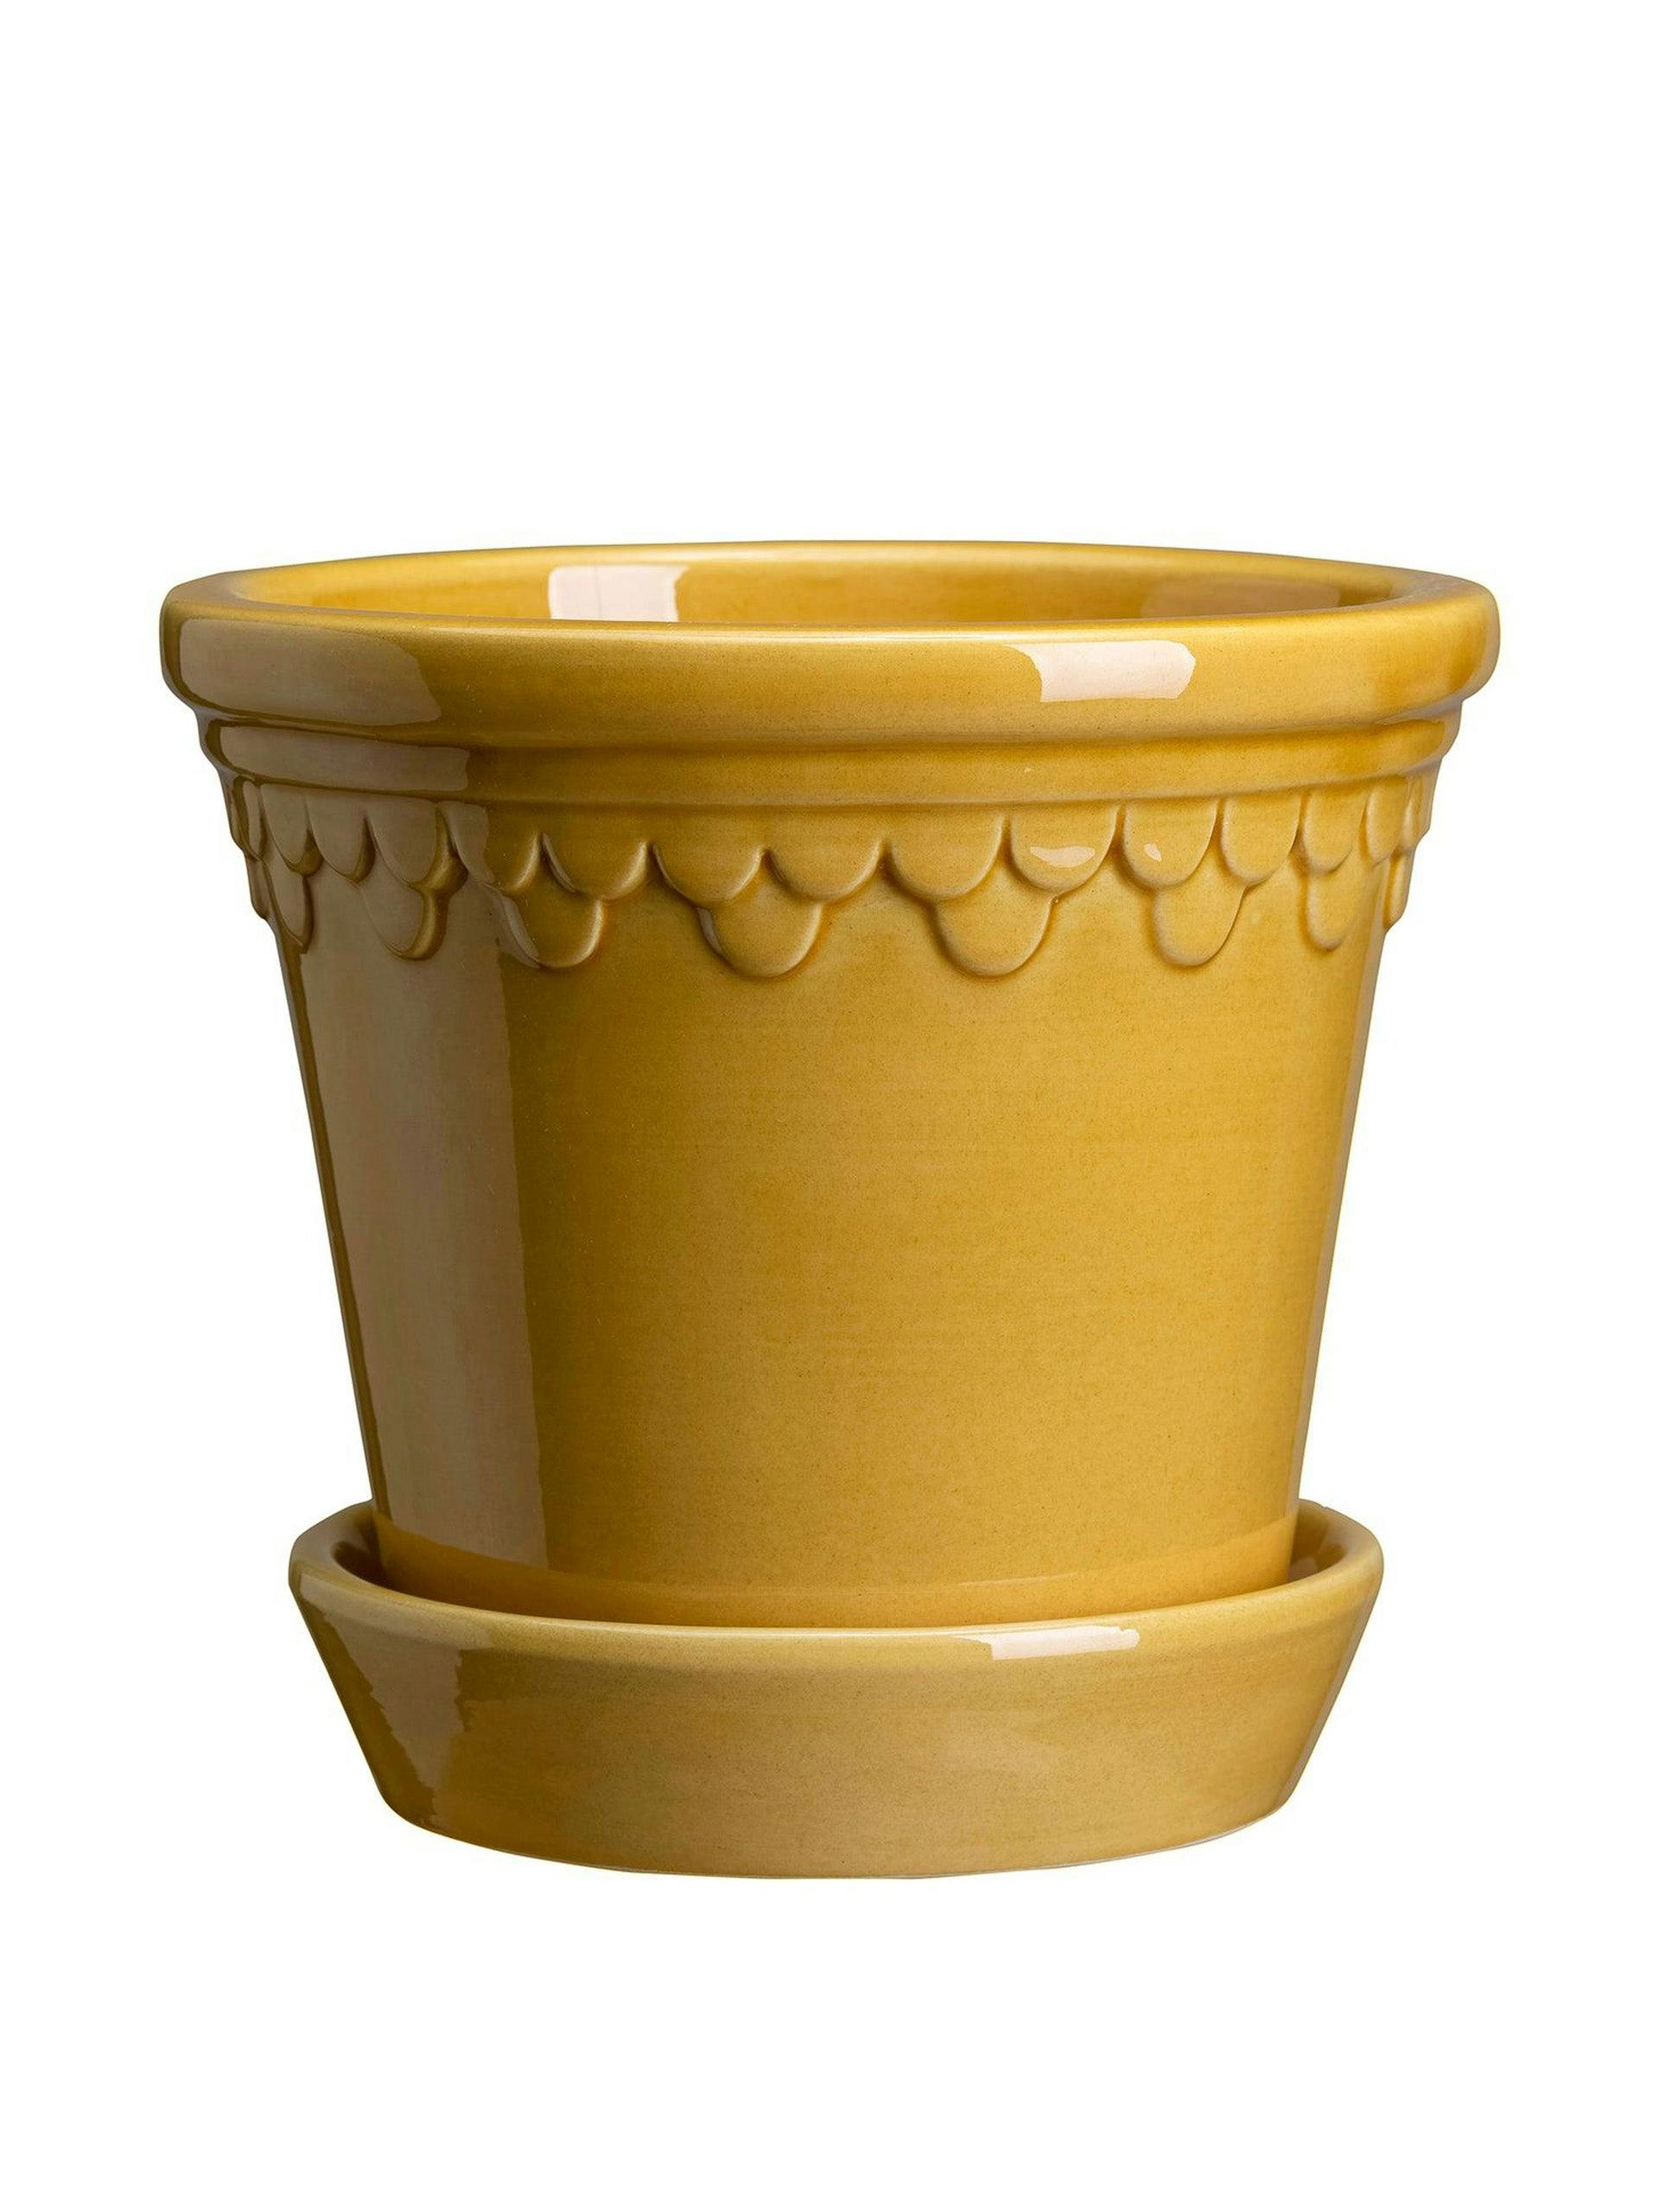 Yellow glazed flower pot